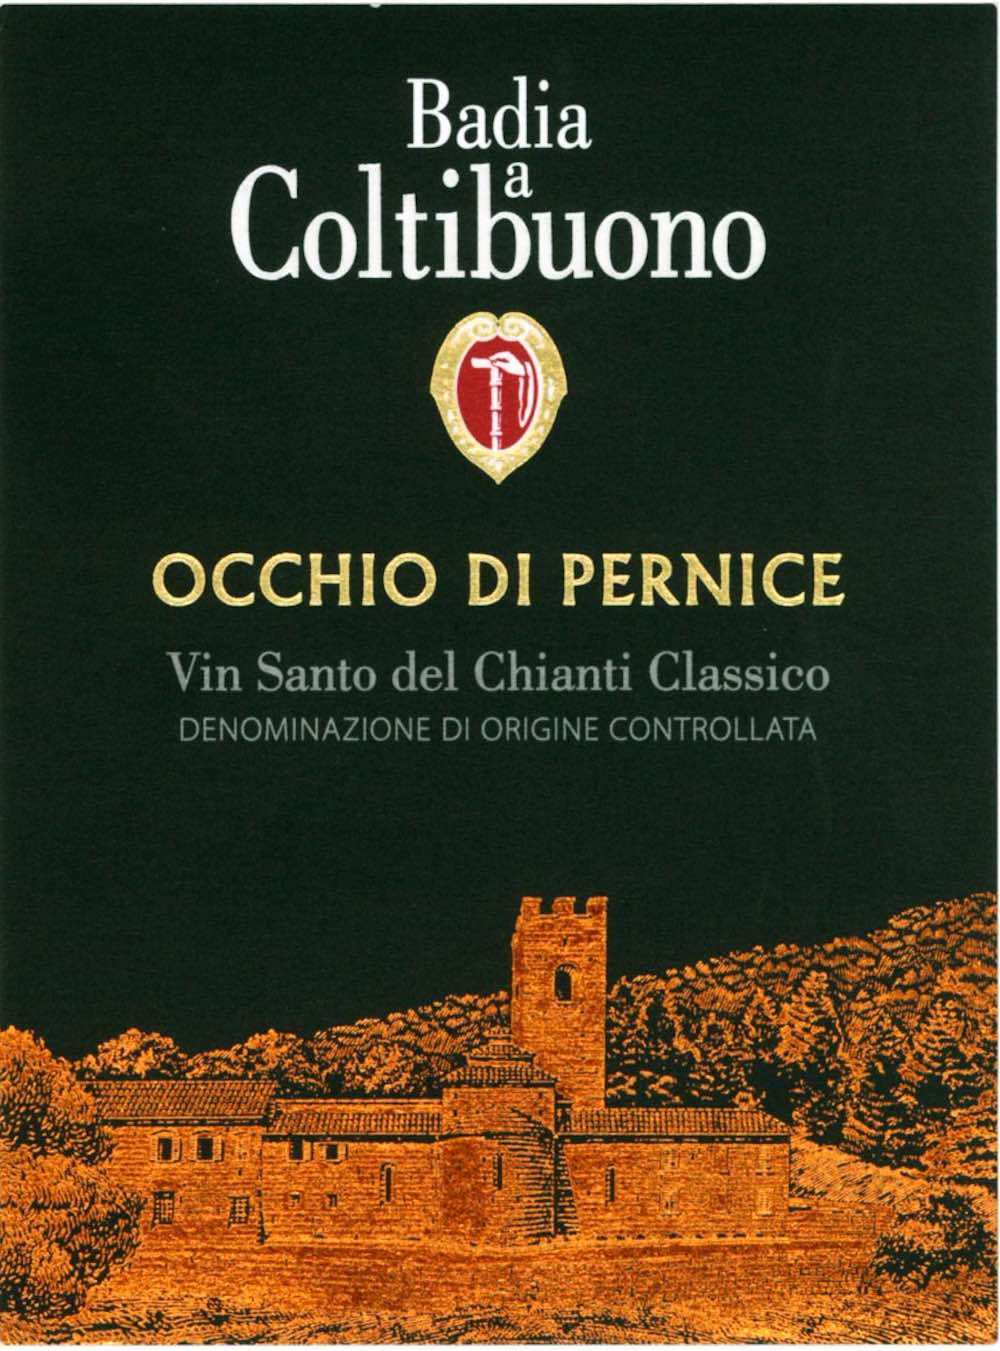 Etichetta della bottiglia Occhio di Pernice di Badia a Coltibuono, eccellenza tra i vini pregiati toscani